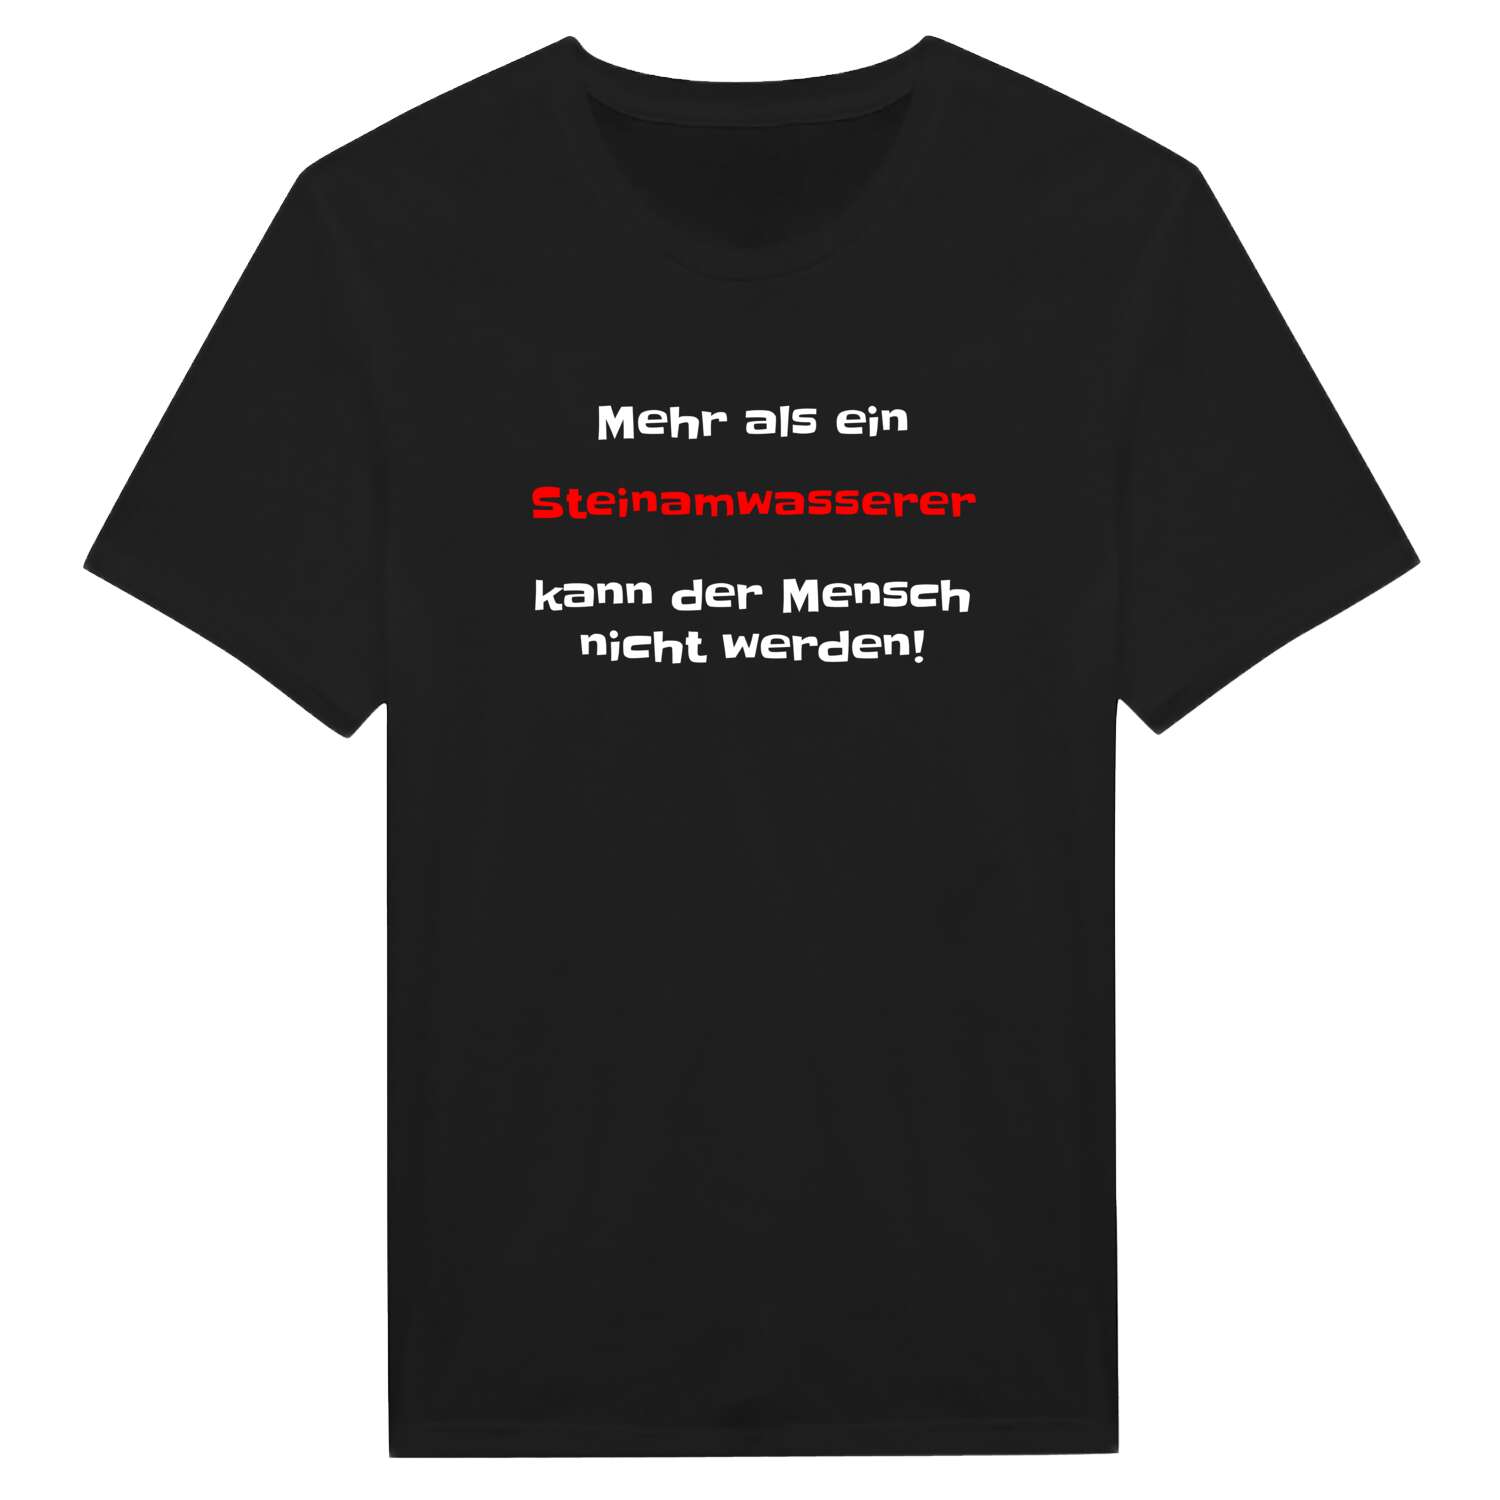 Steinamwasser T-Shirt »Mehr als ein«